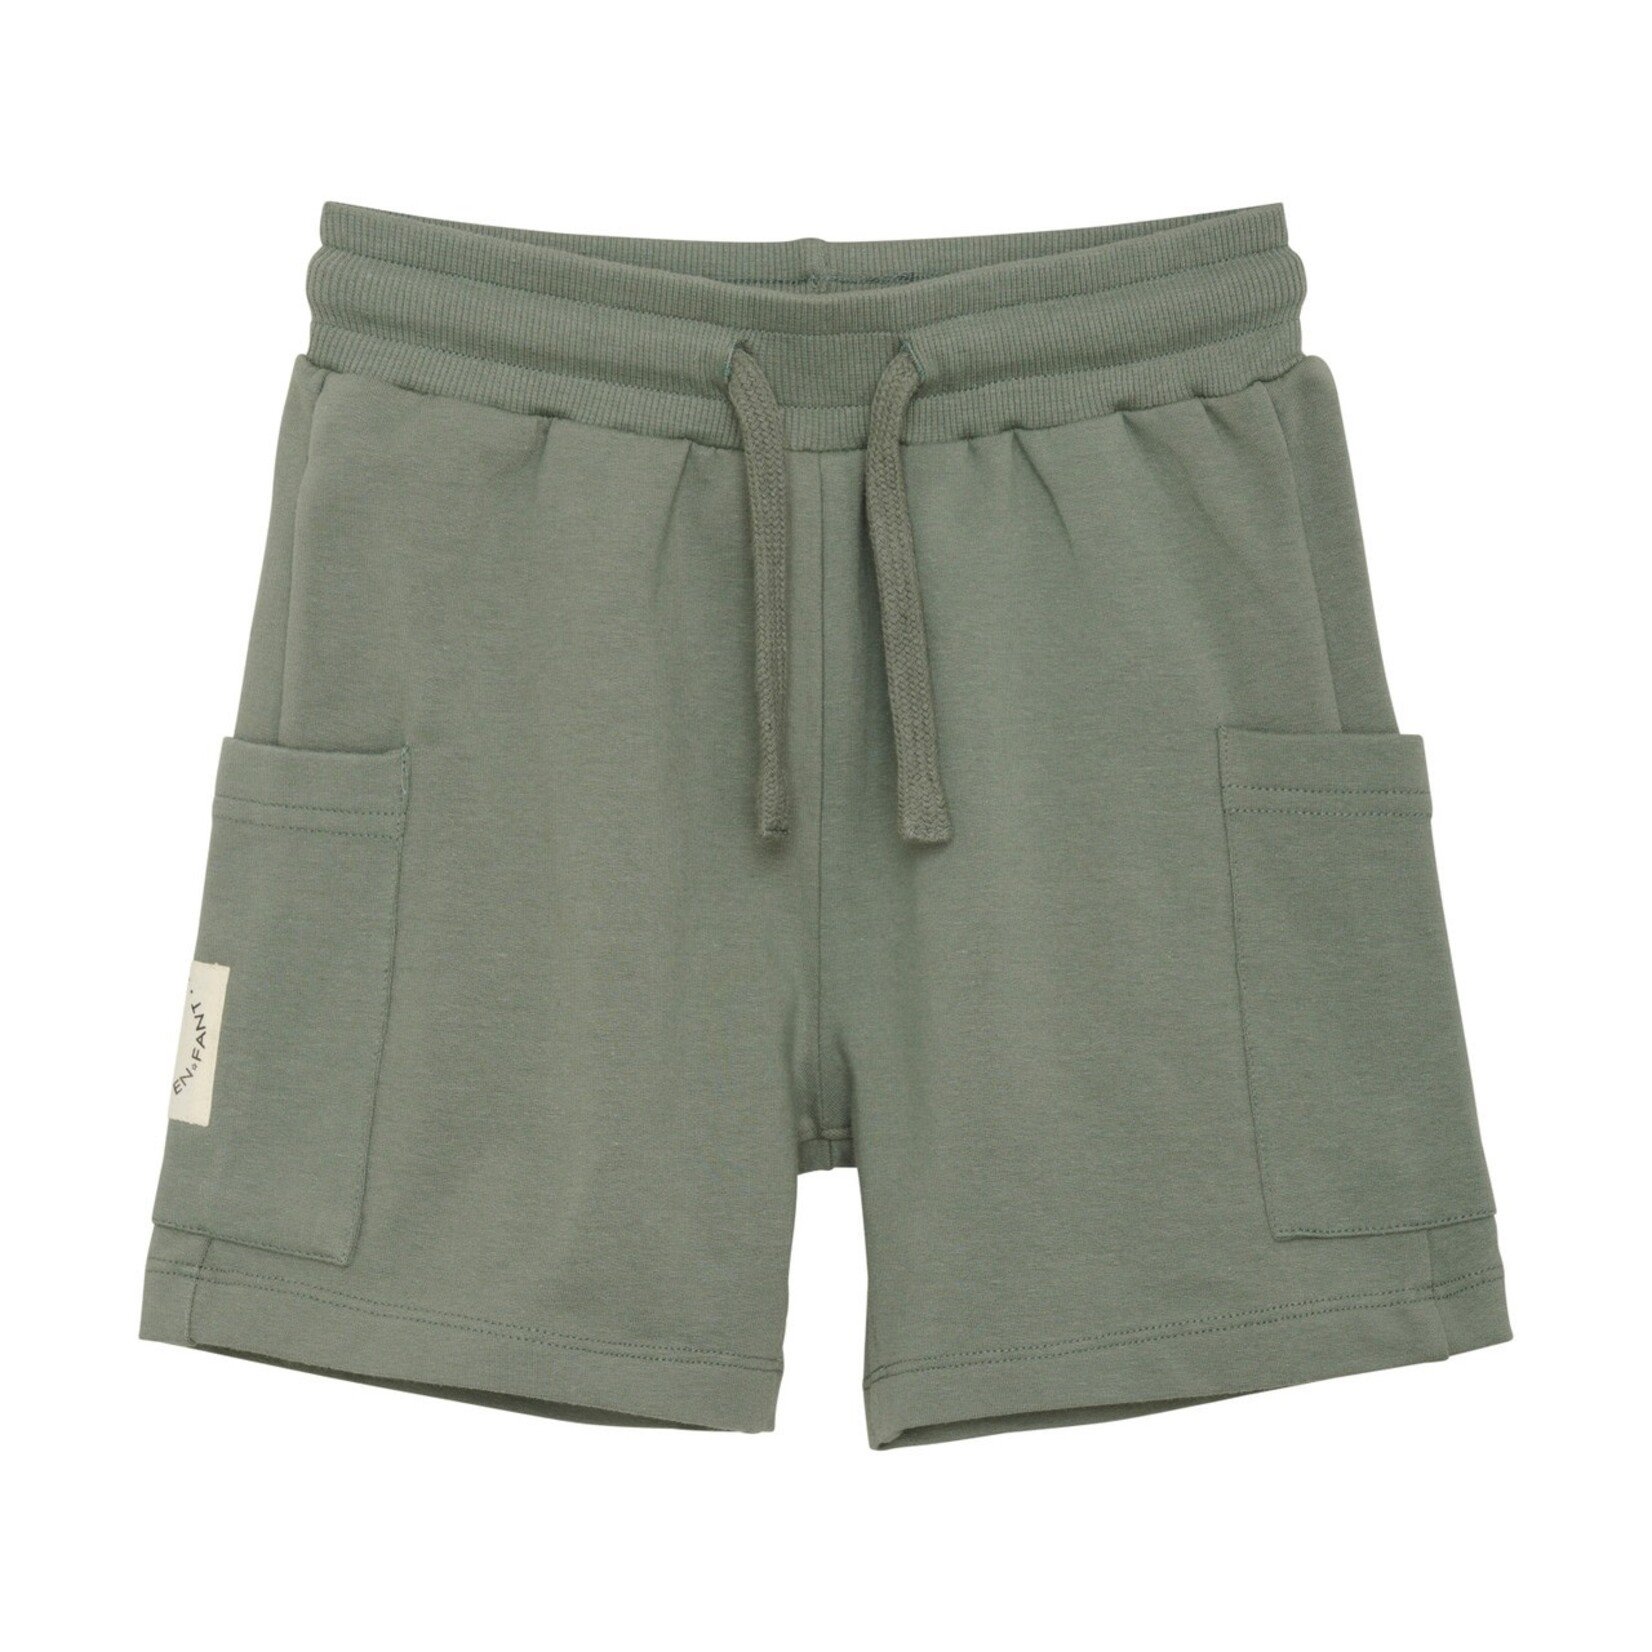 Enfant ENFANT - Verdigris Cotton Sweat Shorts with Pockets